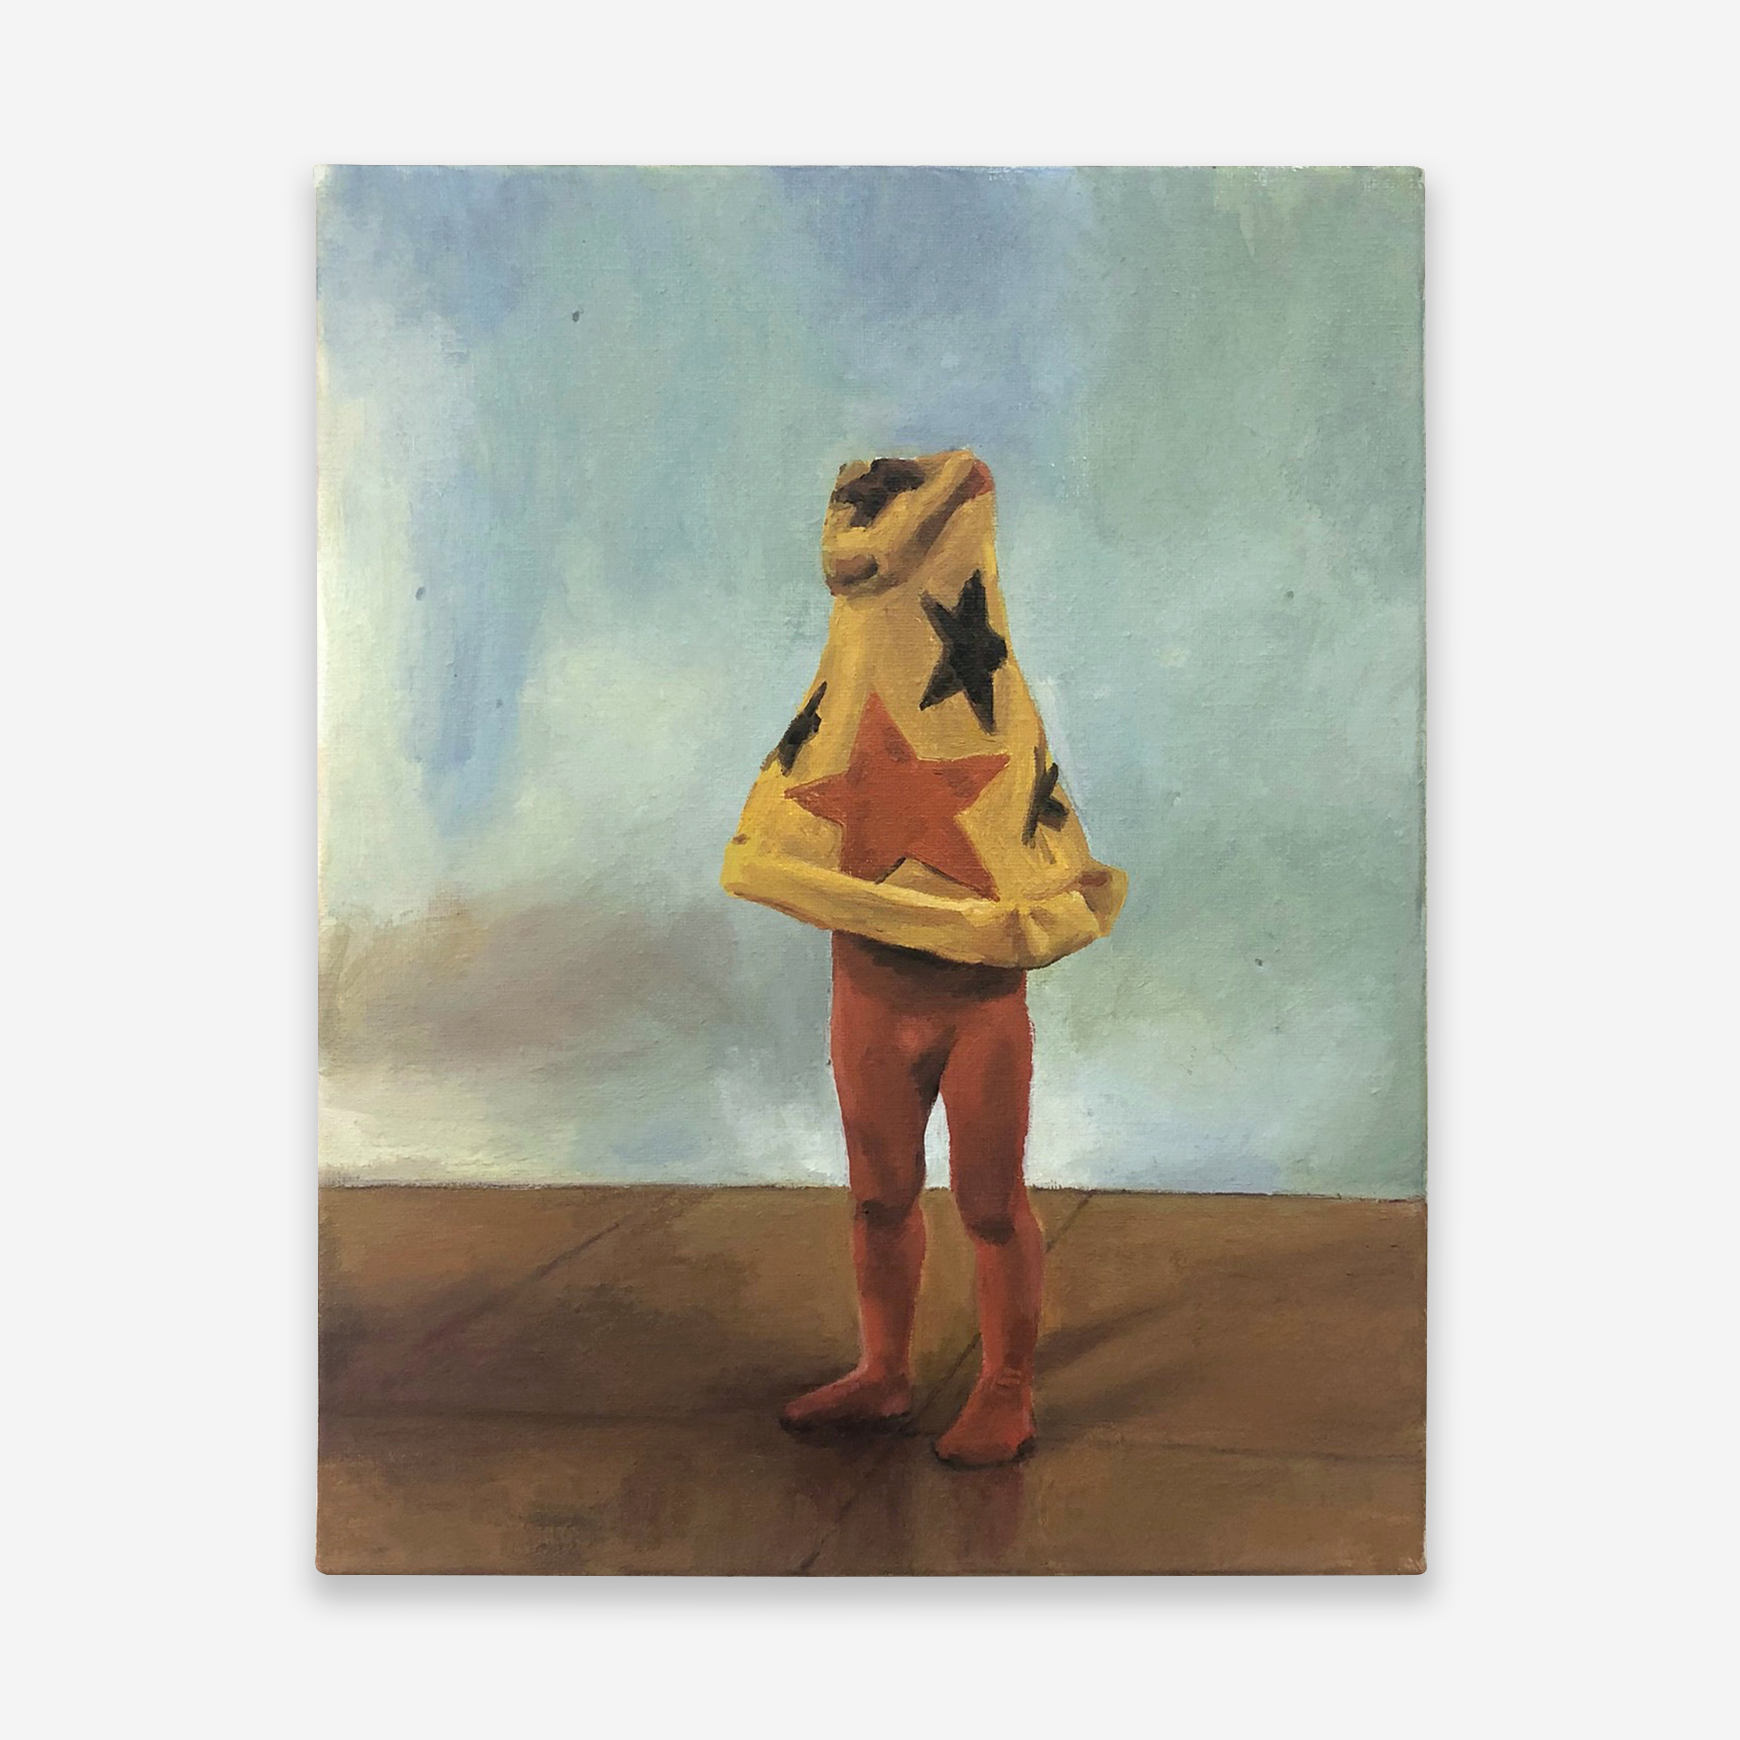   Cheech Costume, Discon II 1974 , oil on canvas, 11” x 14”, 2020 